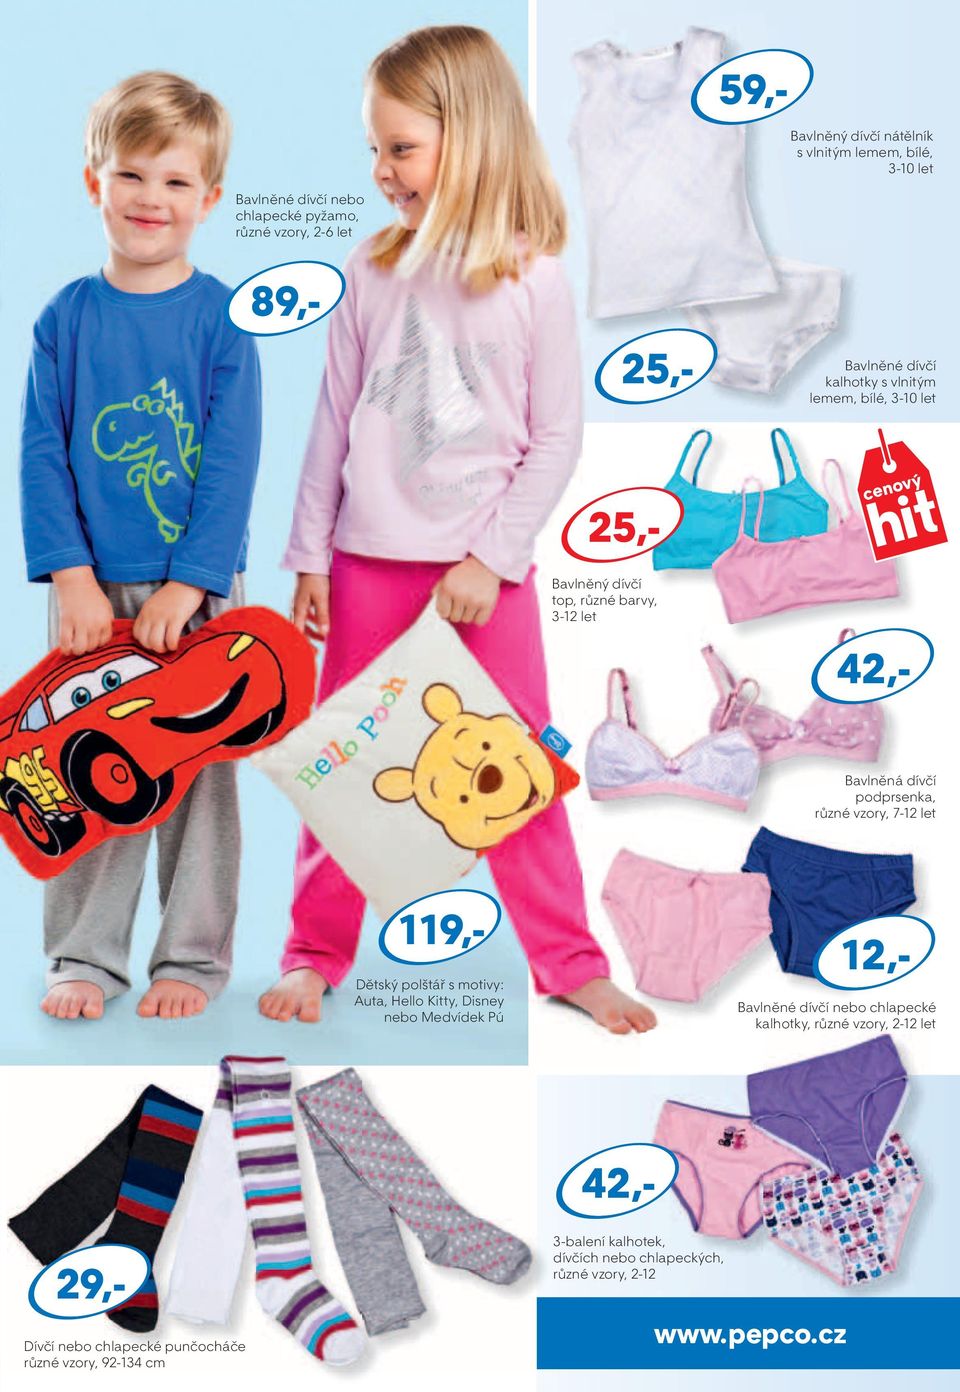 vzory, 7-12 let 12,- Dětský polštář s motivy: Auta, Hello Kitty, Disney nebo Medvídek Pú Bavlněné dívčí nebo chlapecké kalhotky, různé